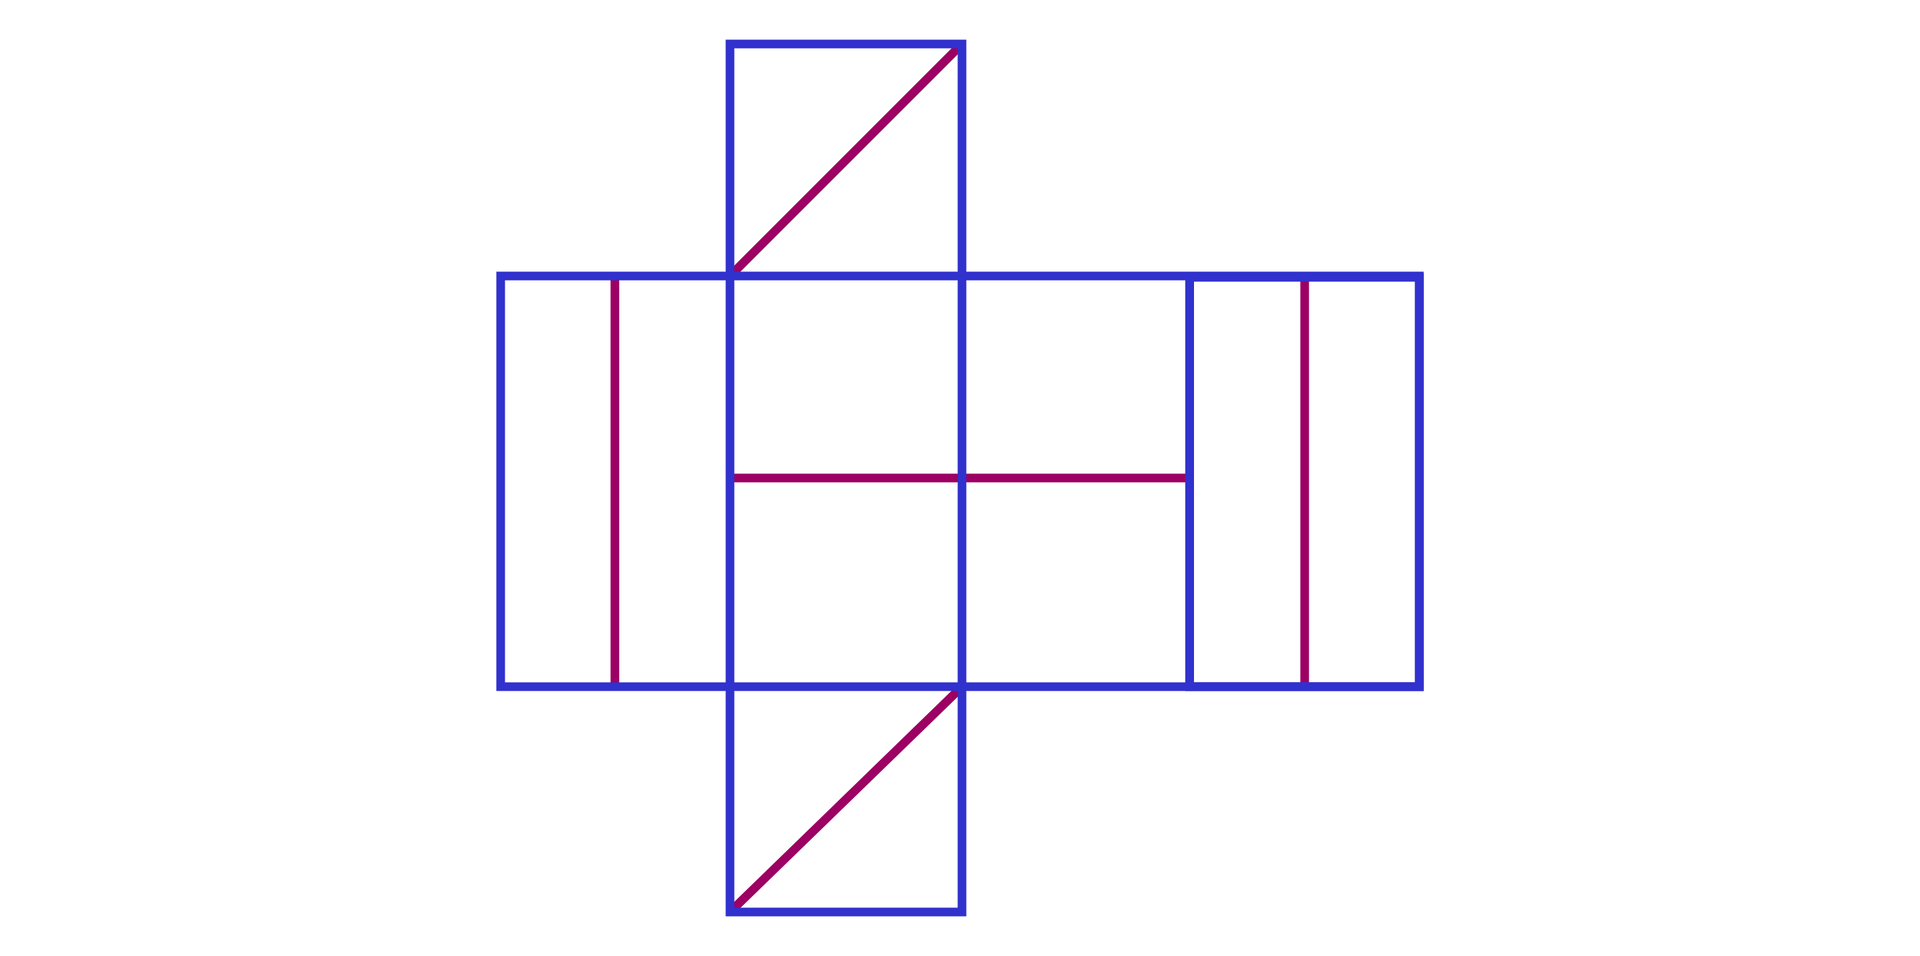 Grafika przedstawia siatkę  graniastosłupa prawidłowego czworokątnego. Siatka przedstawiona jest w taki sposób że cztery prostokąty ułożone są przylegająco wysokościami. Powyżej oraz poniżej do drugiego prostokąta przylegają kwadraty. Przekątne kwadratów oznaczone są czerwonymi liniami. Boki graniastosłupa również podzielono na pół liniami , dwa wzdłużnie a dwa poprzecznie na mniejsze prostokąty, naprzemianlegle tak że pierwszy i czwarty prostokąt podzielone są na węższe prostokąty a drugi i trzeci na kwadraty. 